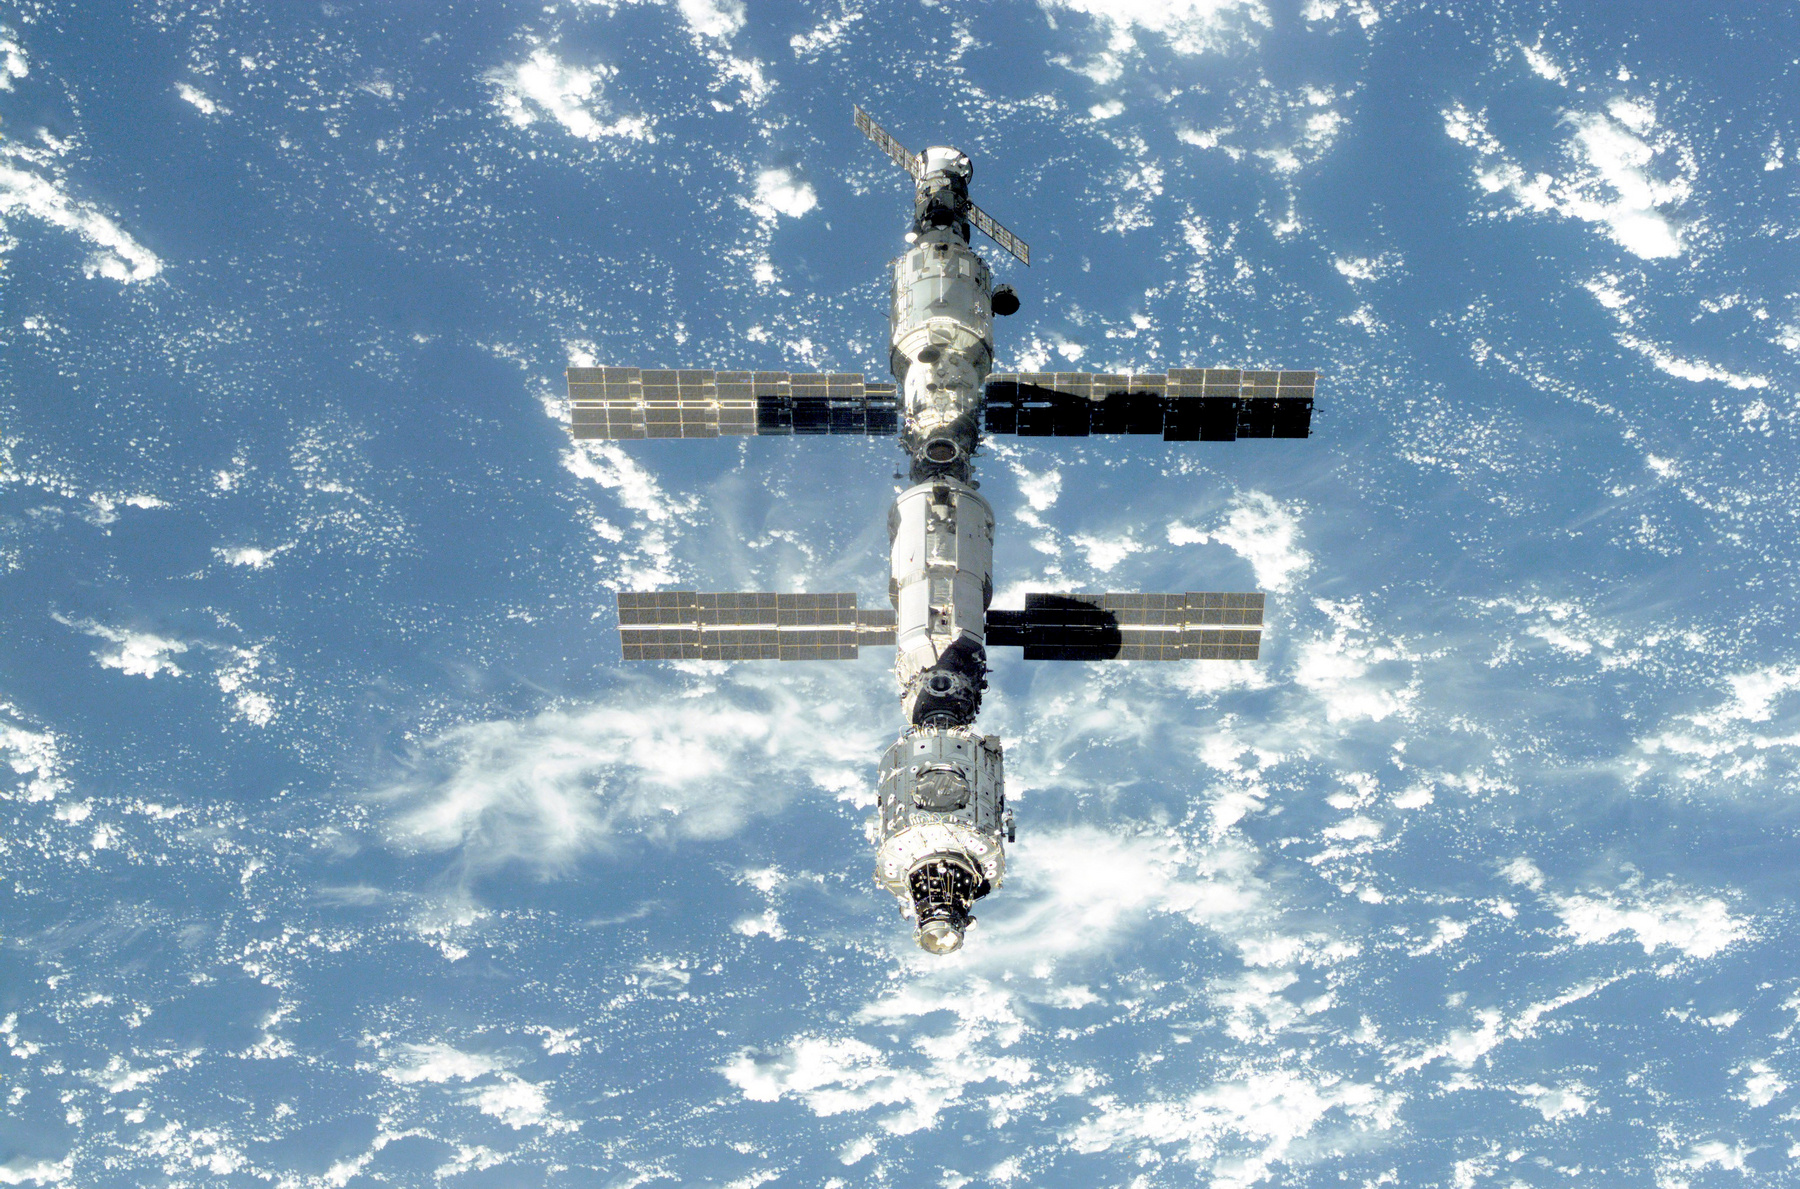 Tíz évvel később, 2011-ben véget ért az űrsiklóprogram. Az űrállomás addigra így nézett ki, a képet az Endeavour űrsikló utolsó repülésén készítette a legénység, miután elindultak az állomásról vissza a bolygóra.